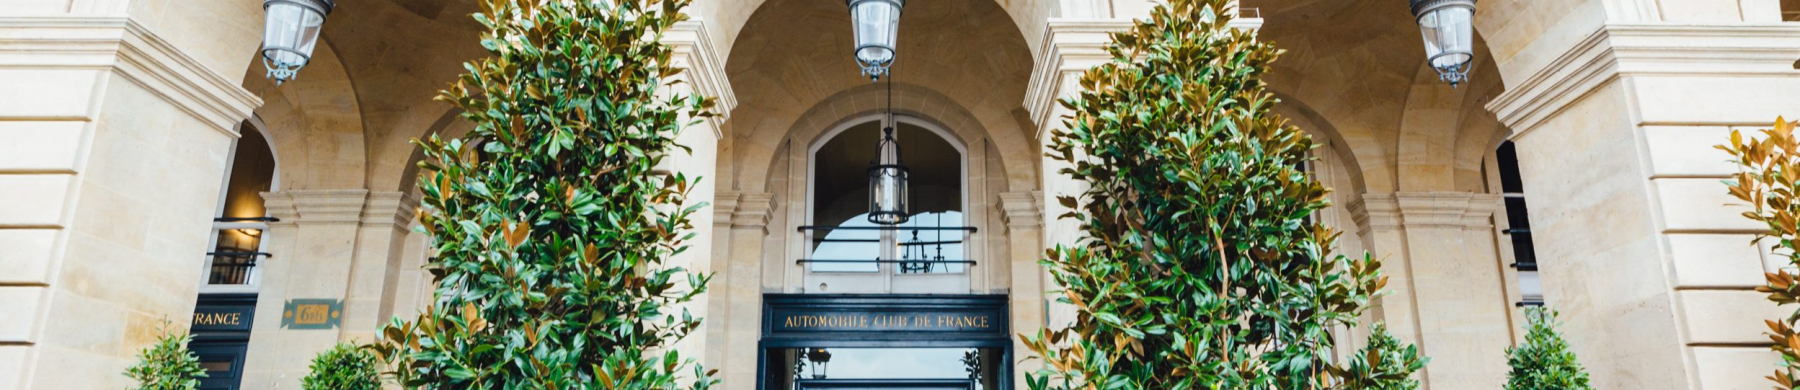 Bannière Automobile Club de France